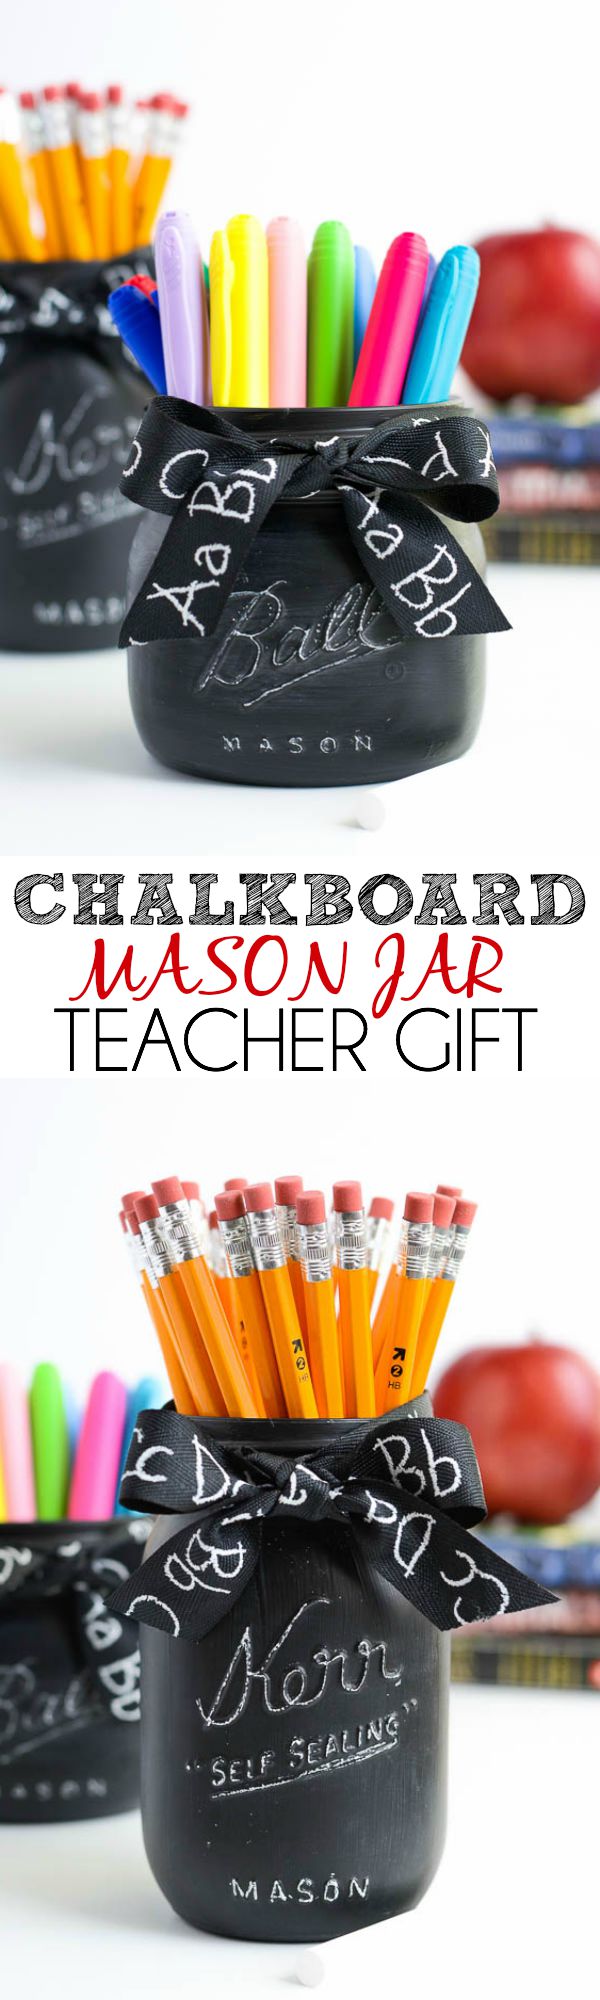 Chalkboard-Mason-Jar-Teacher-Gift